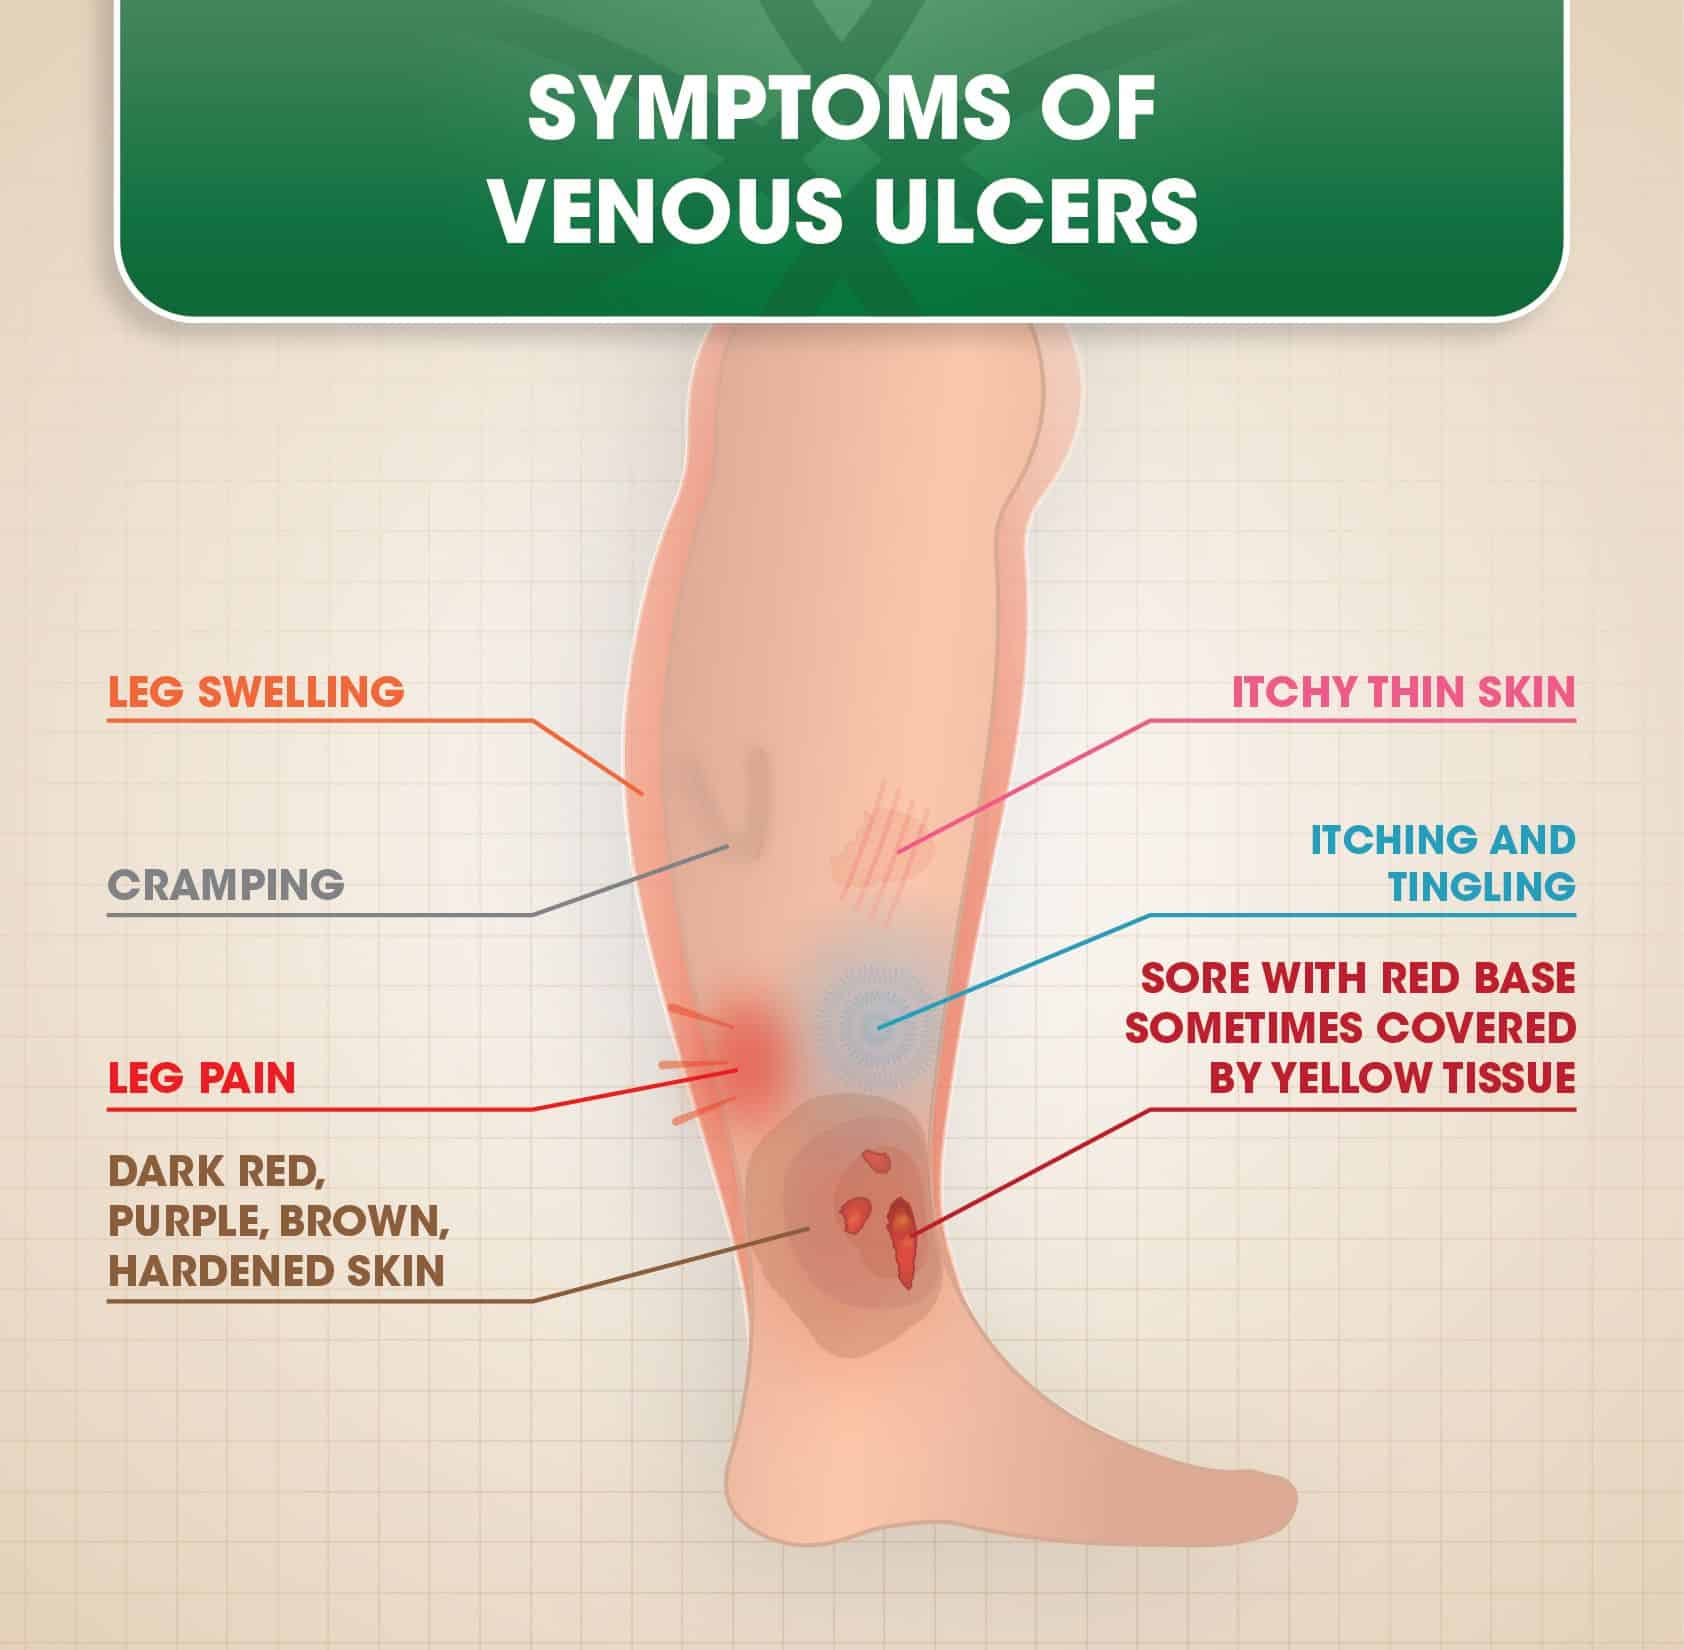 Venous Ulcers